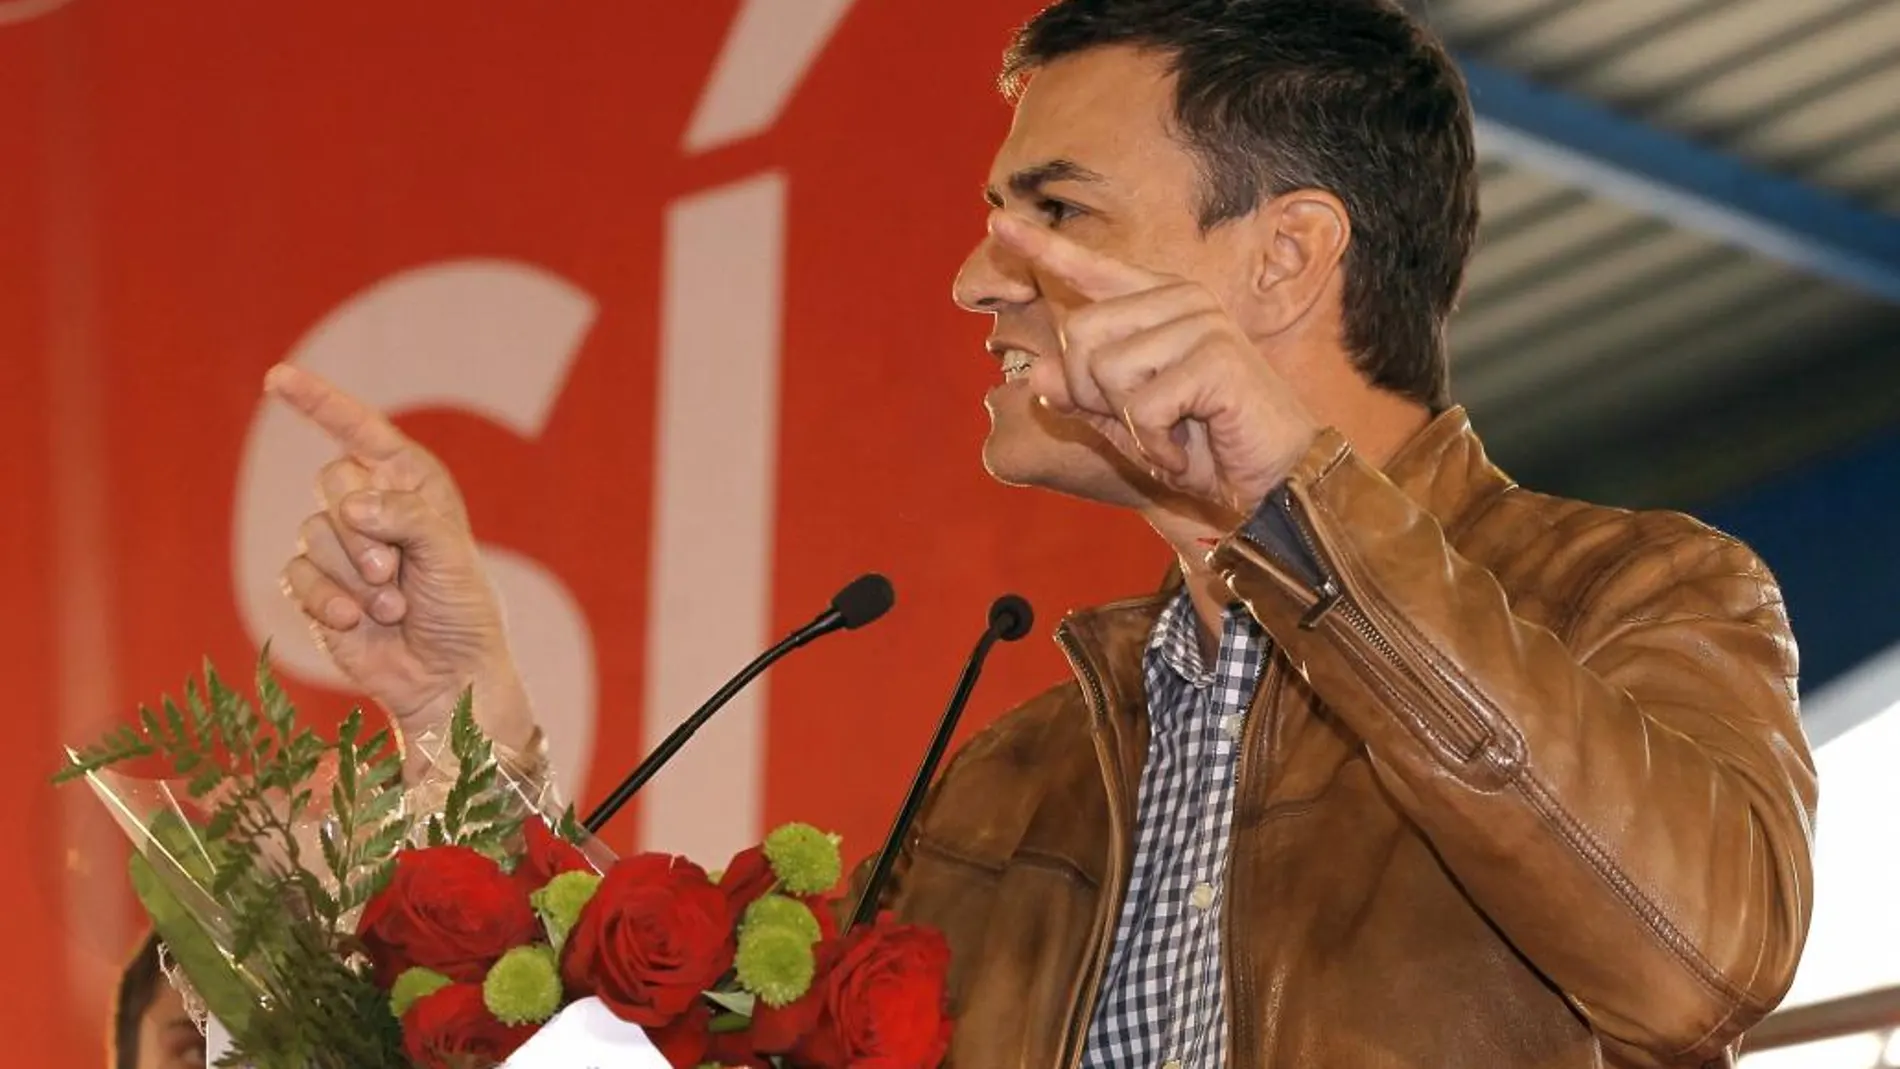 El candidato a la Secretaría General del PSOE Pedro Sánchez ha iniciado su campaña con un acto en Gijón en el que ha estado acompañado de la diputada asturiana Adriana Lastra